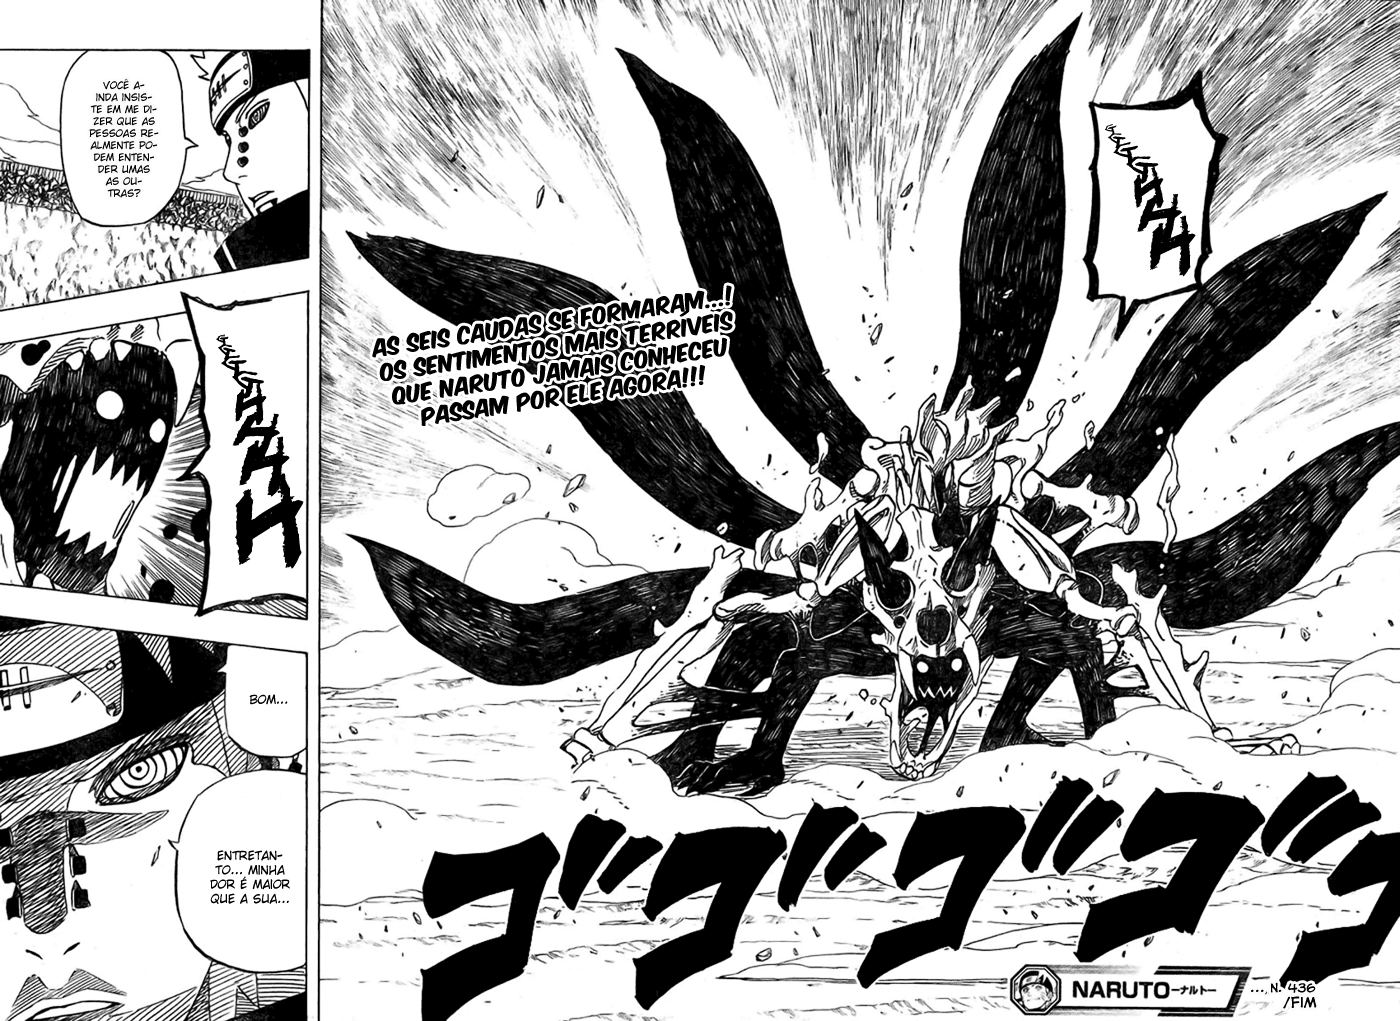 Popularidade das Kunoichis. Por que apenas Sakura e Hinata se destacam? - Página 3 16-17